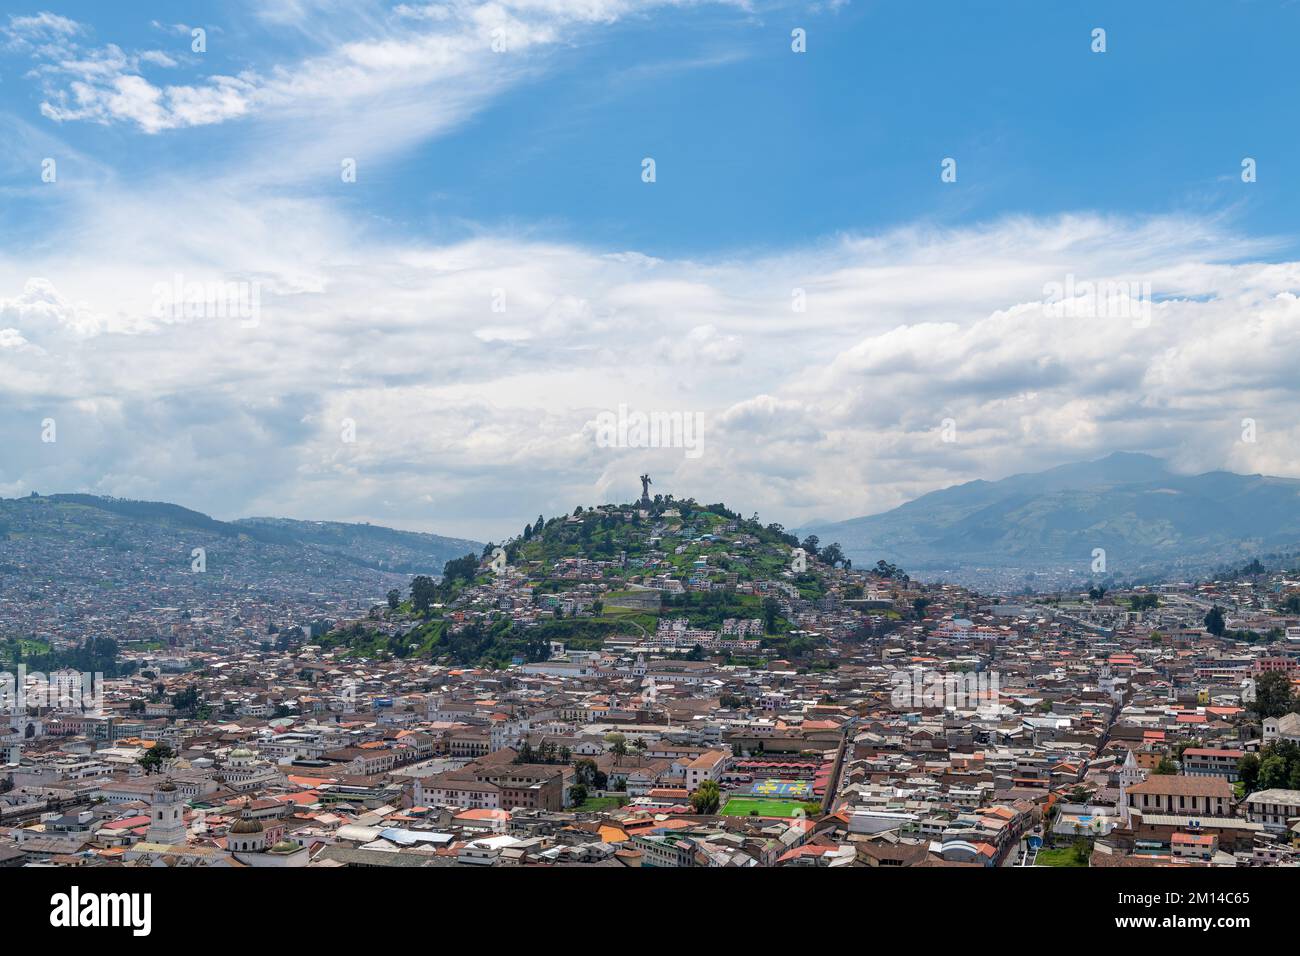 Paysage urbain aérien du centre historique de Quito avec la colline Panecillo et la statue de la Vierge de Quito, Pichincha, Equateur. Banque D'Images